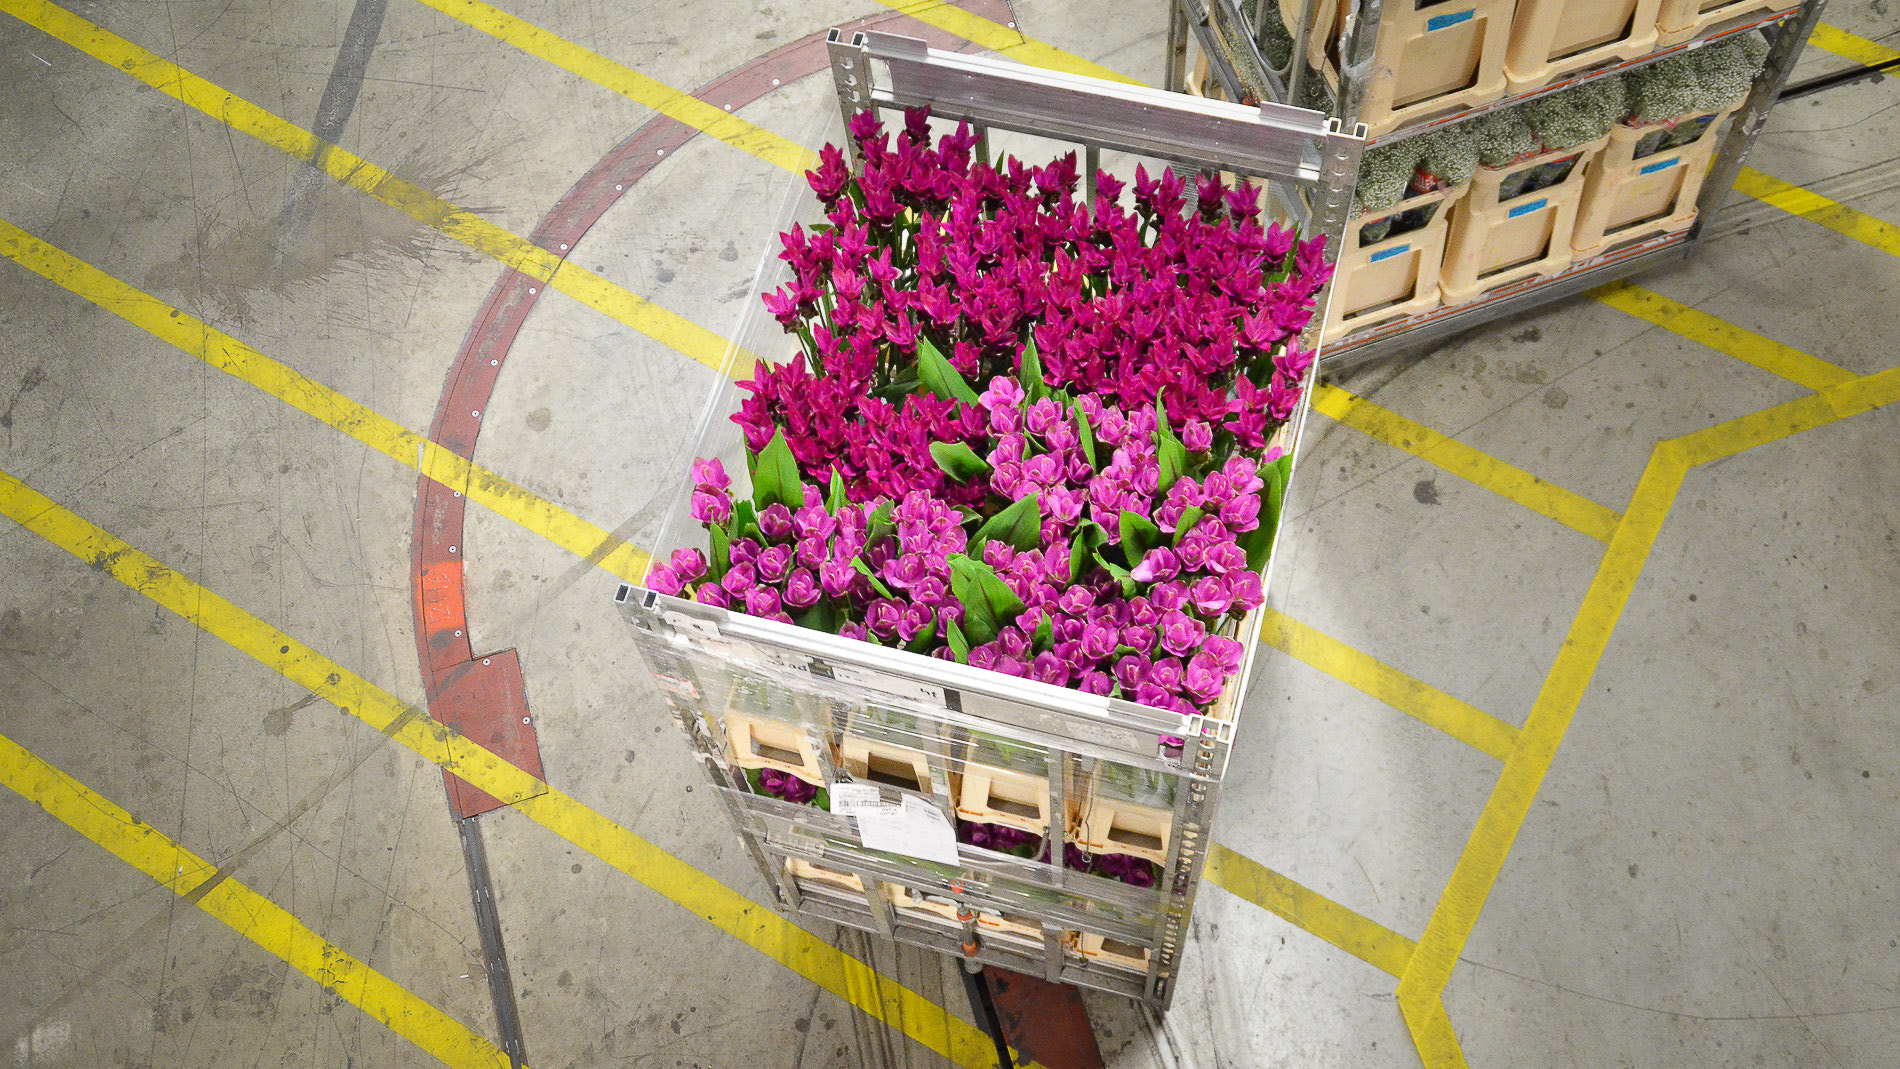 FloraHolland, the world’s largest flower auction